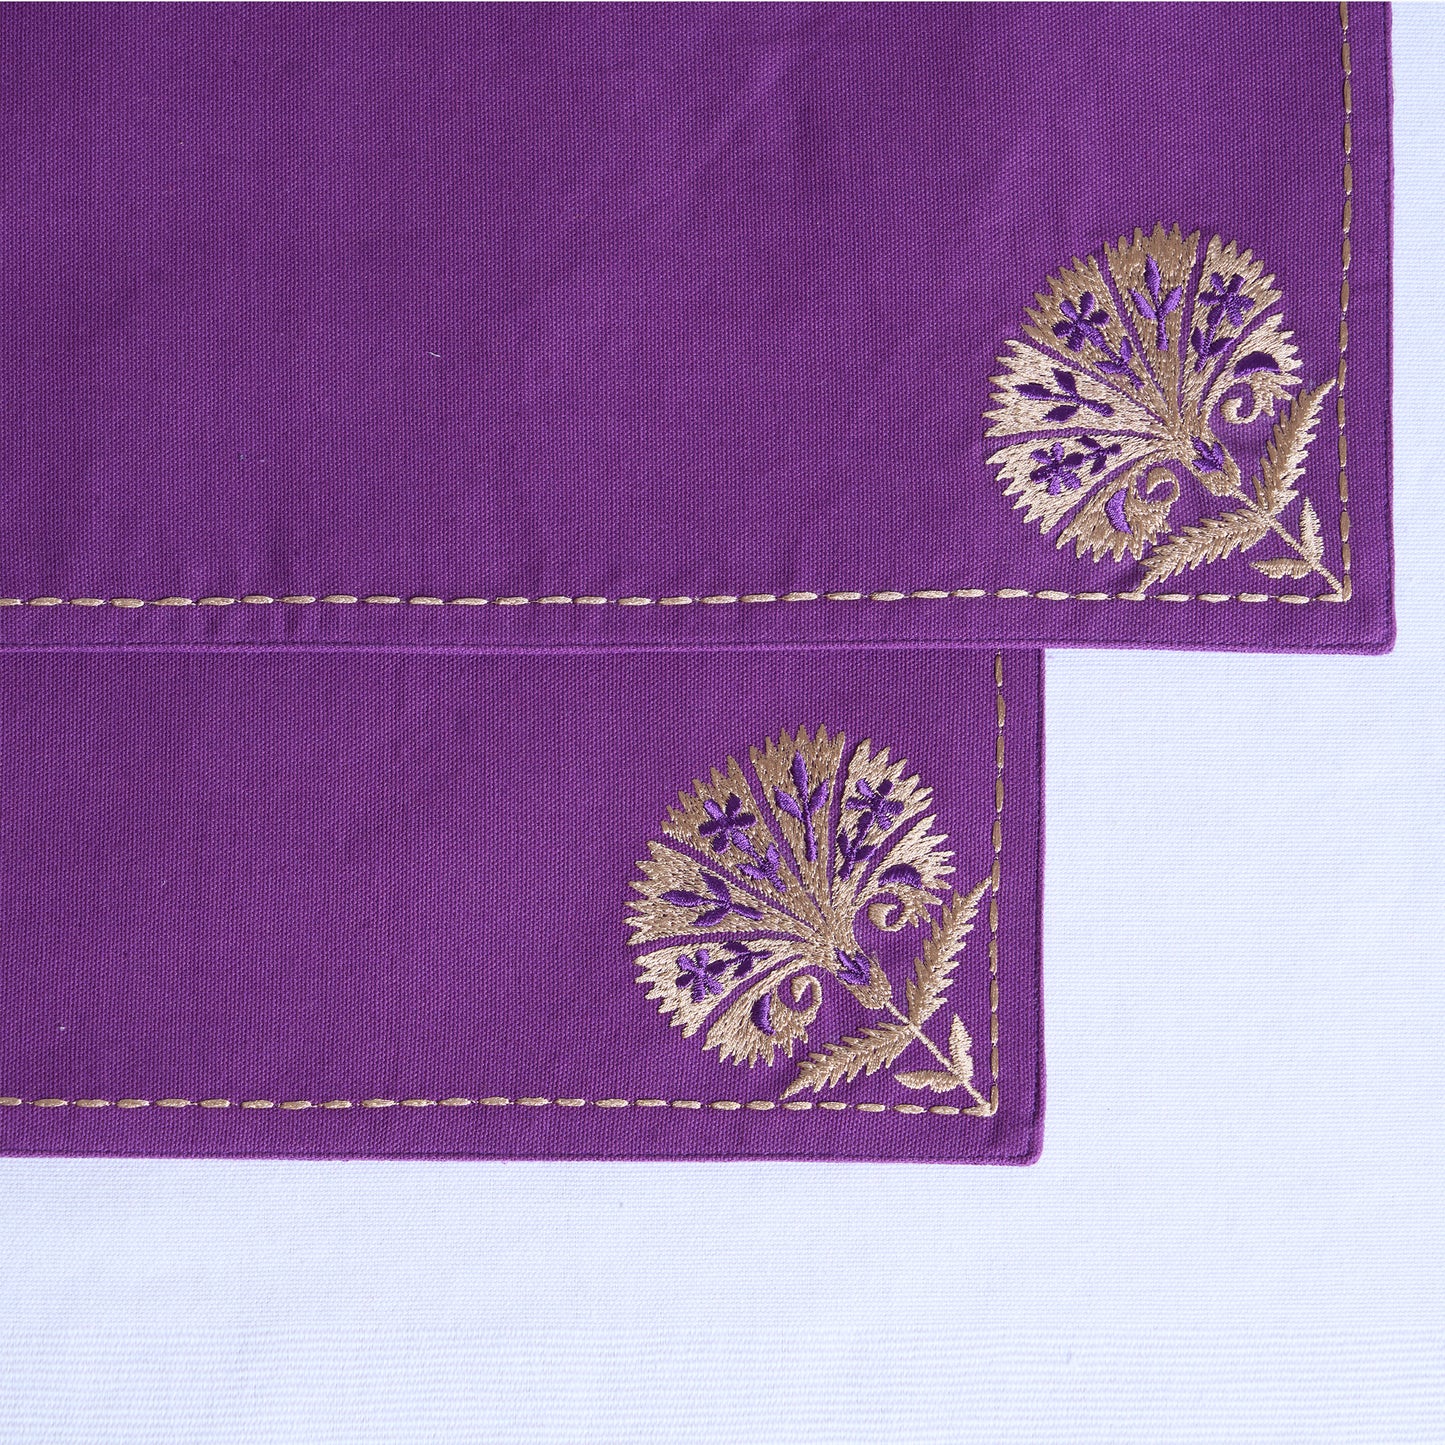 KASHIDAKAARI - Plum embroidered table mats, floral suzni pattern